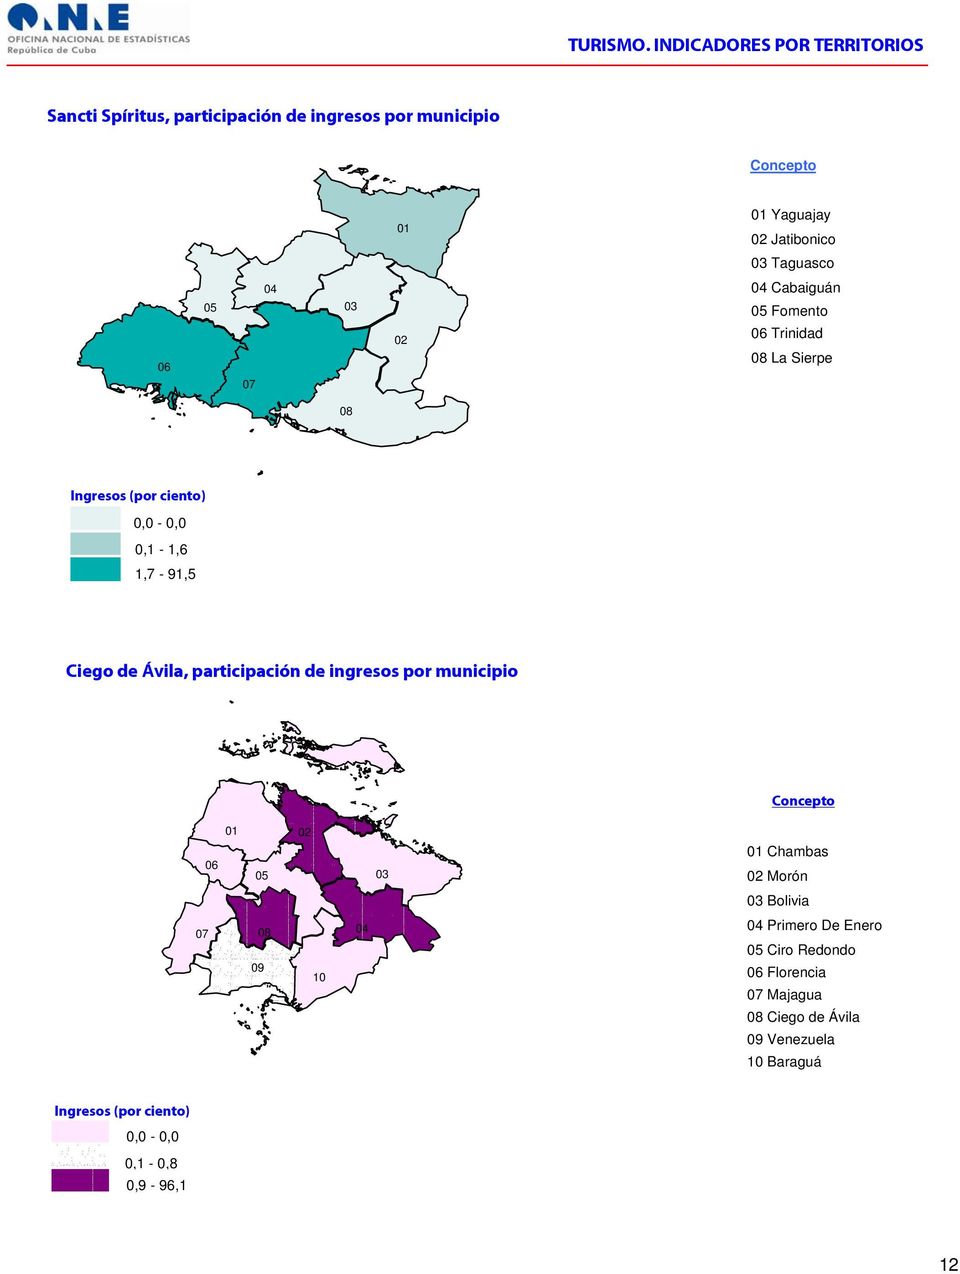 participación de ingresos por municipio Chambas Morón Bolivia Primero De Enero